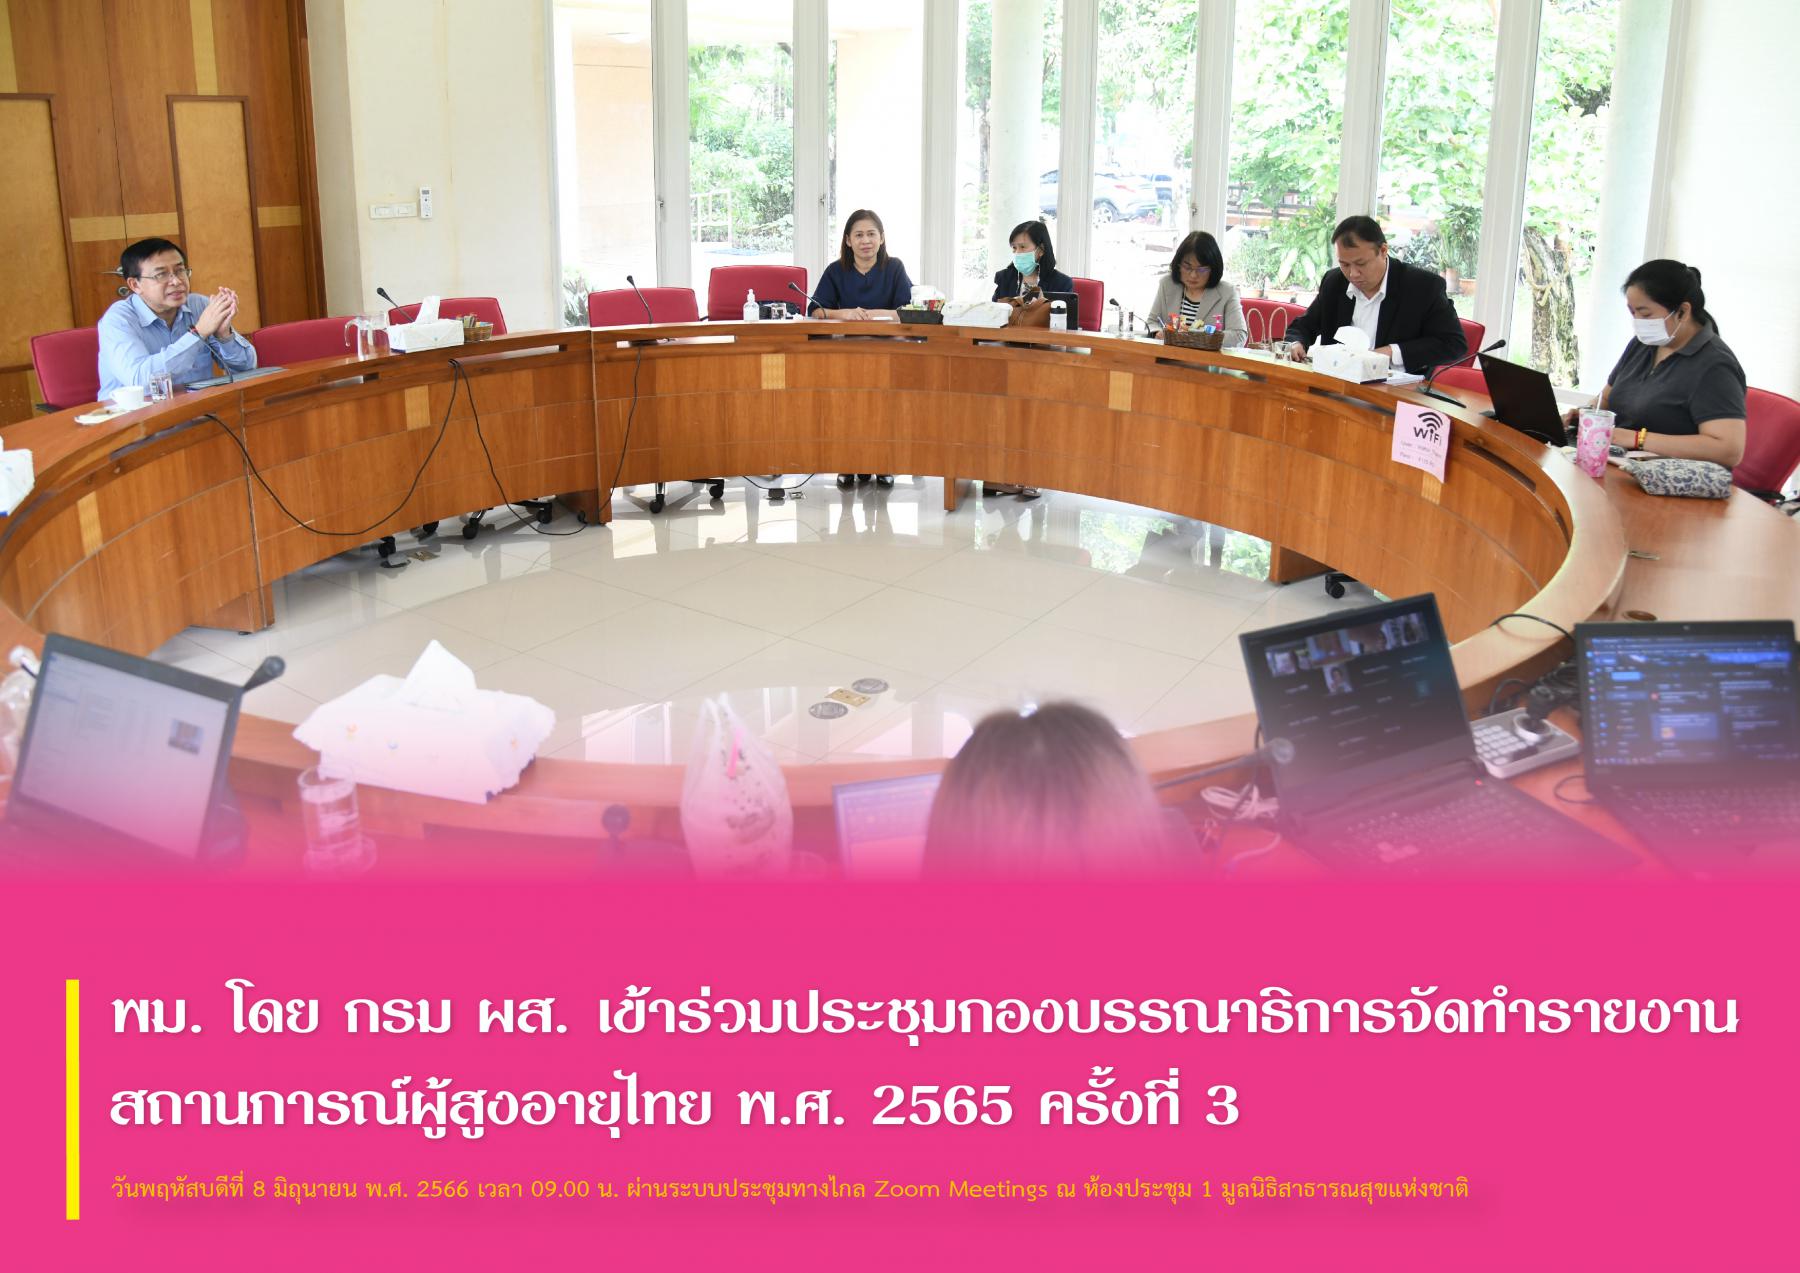 พม. โดย กรม ผส. เข้าร่วมประชุมกองบรรณาธิการจัดทำรายงานสถานการณ์ผู้สูงอายุไทย พ.ศ. 2565 ครั้งที่ 3